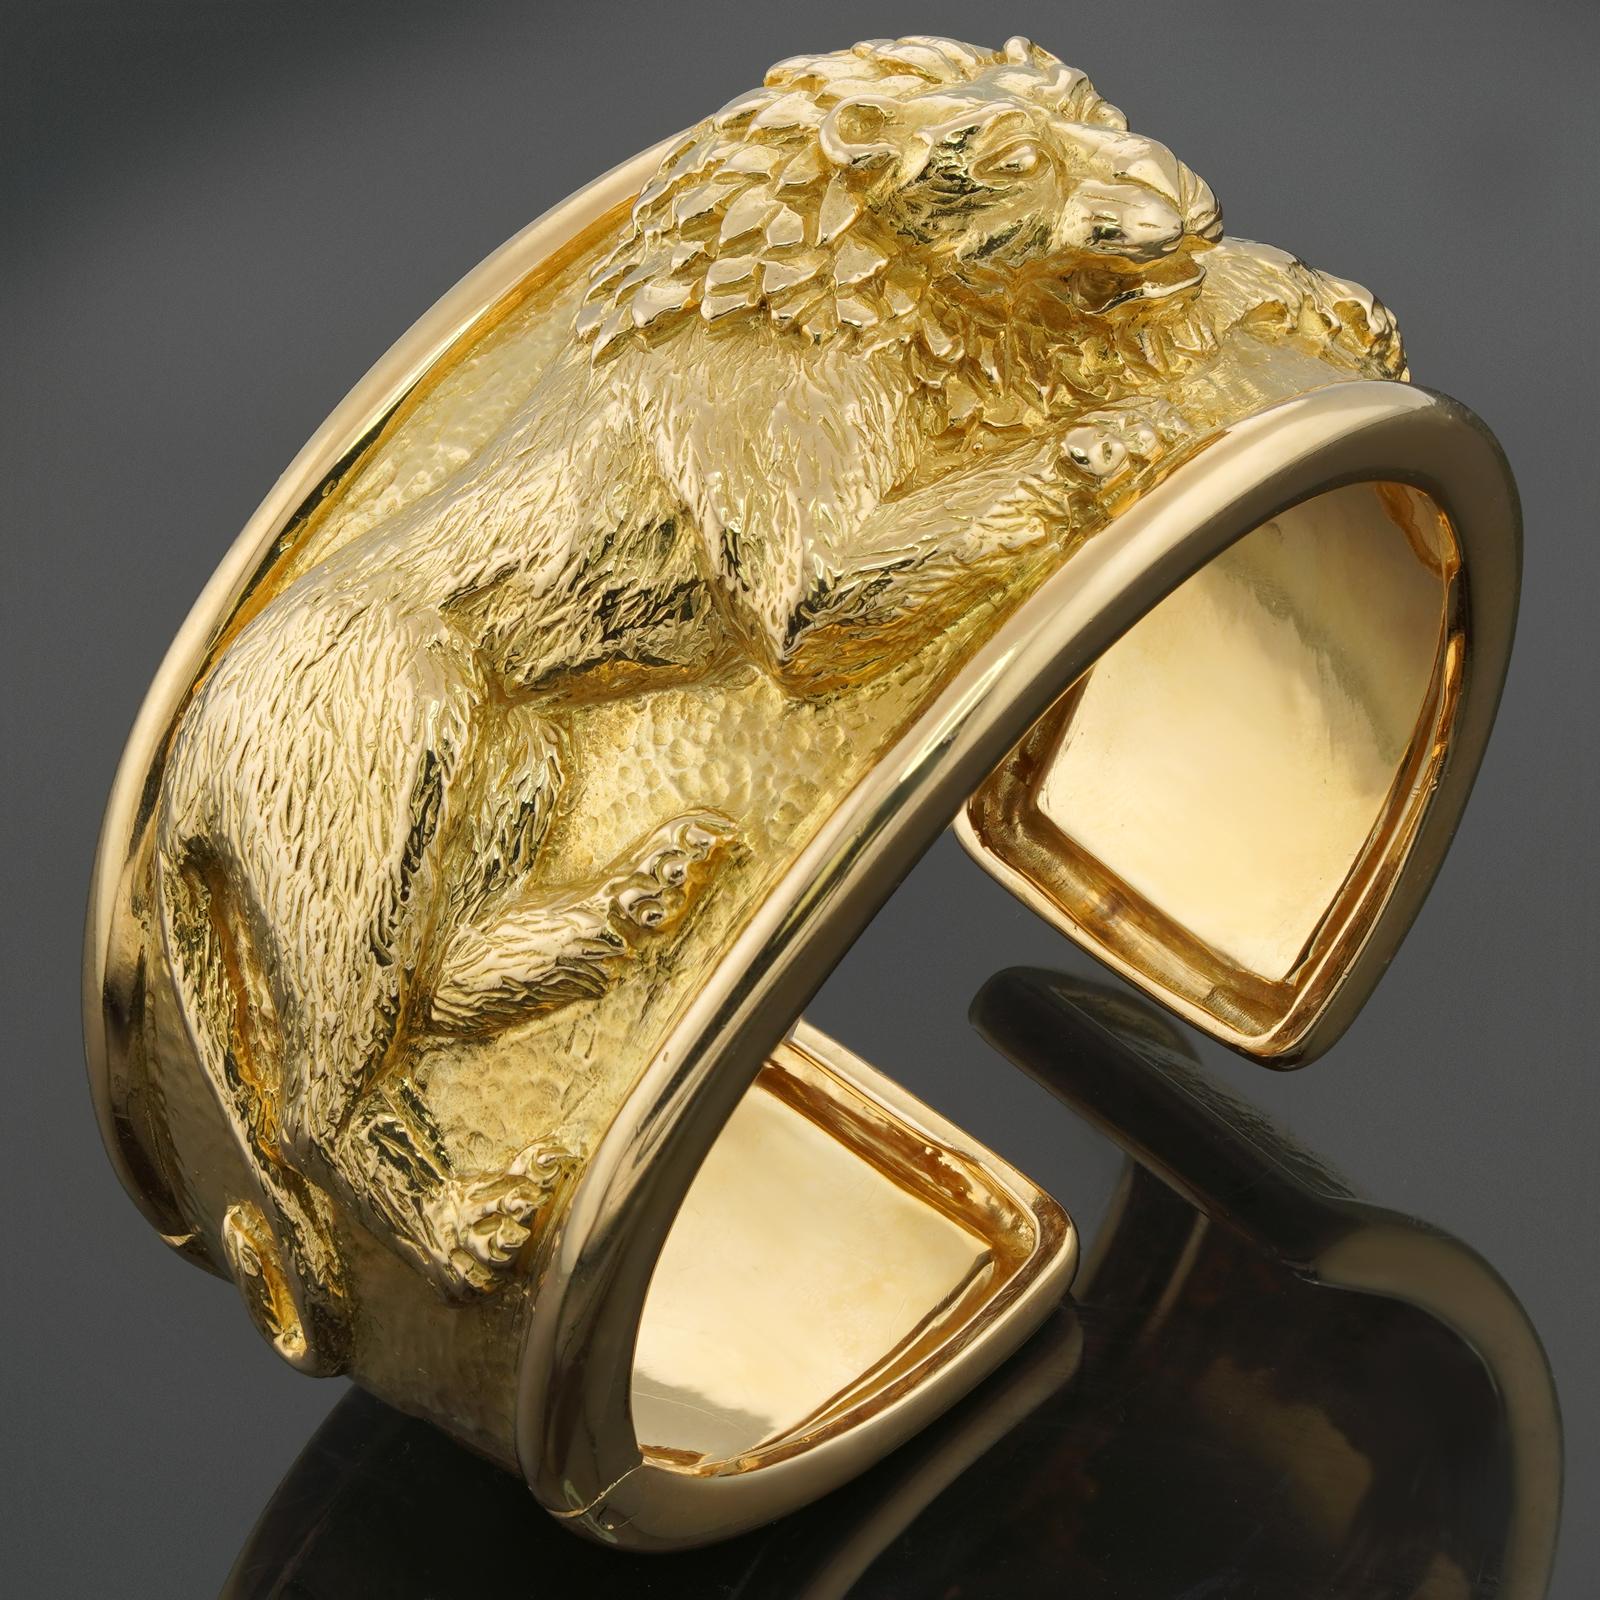 Cet authentique bracelet manchette intemporel de David Webb est orné d'un motif de lion en or jaune poli et martelé et est complété par une section à charnière permettant un port confortable. Fabriqué aux États-Unis vers les années 1980. Dimensions